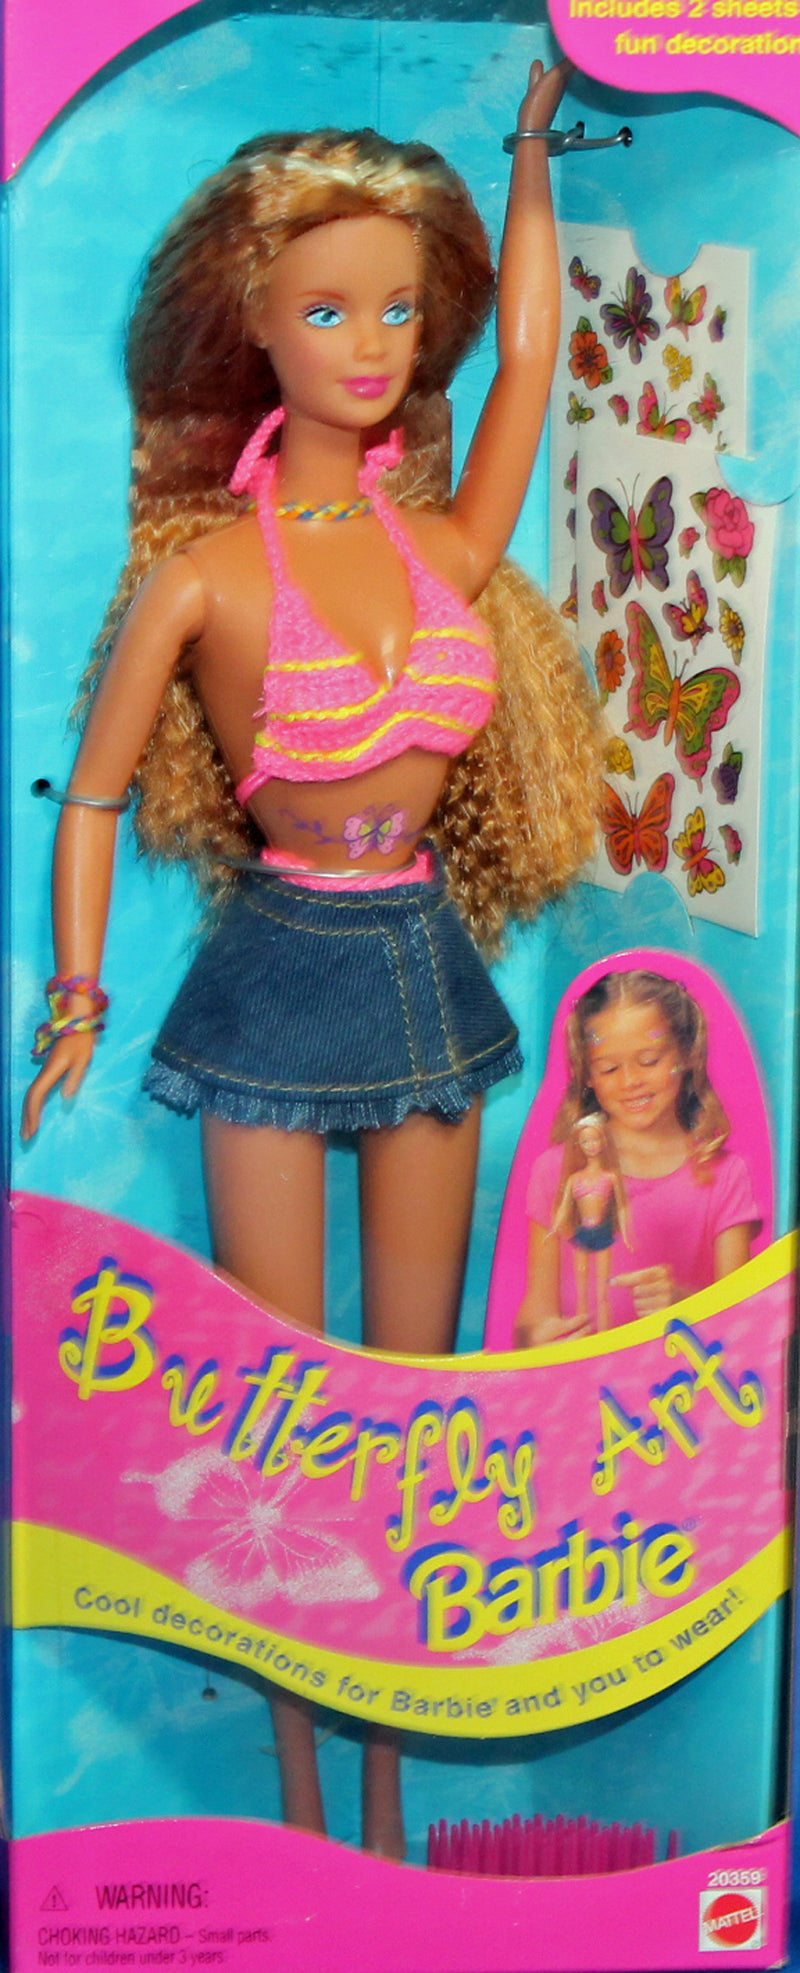 1998 Butterfly Art Barbie (20359)